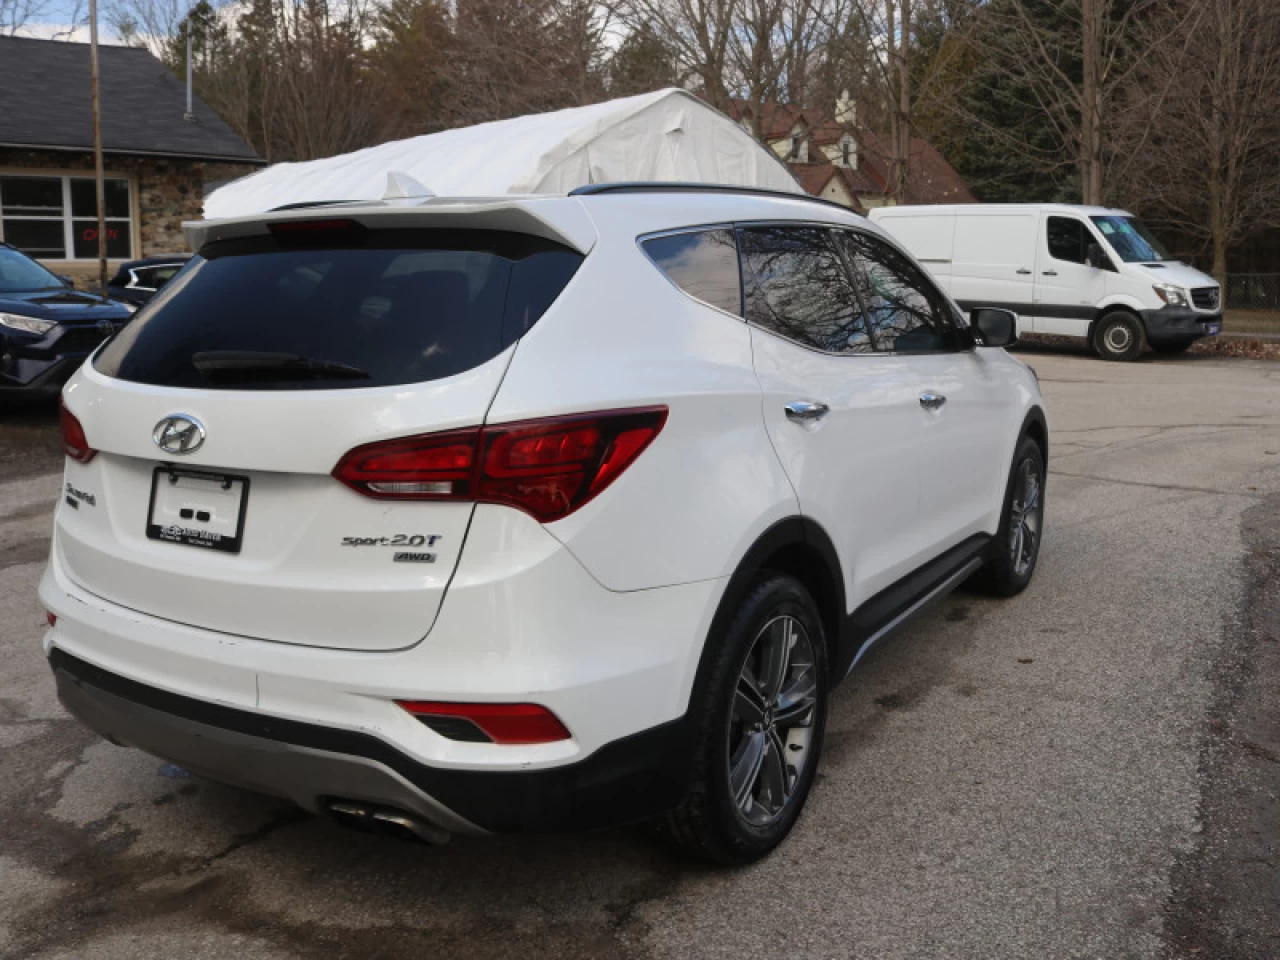 2017 Hyundai Santa Fe Sport 2.0T Main Image